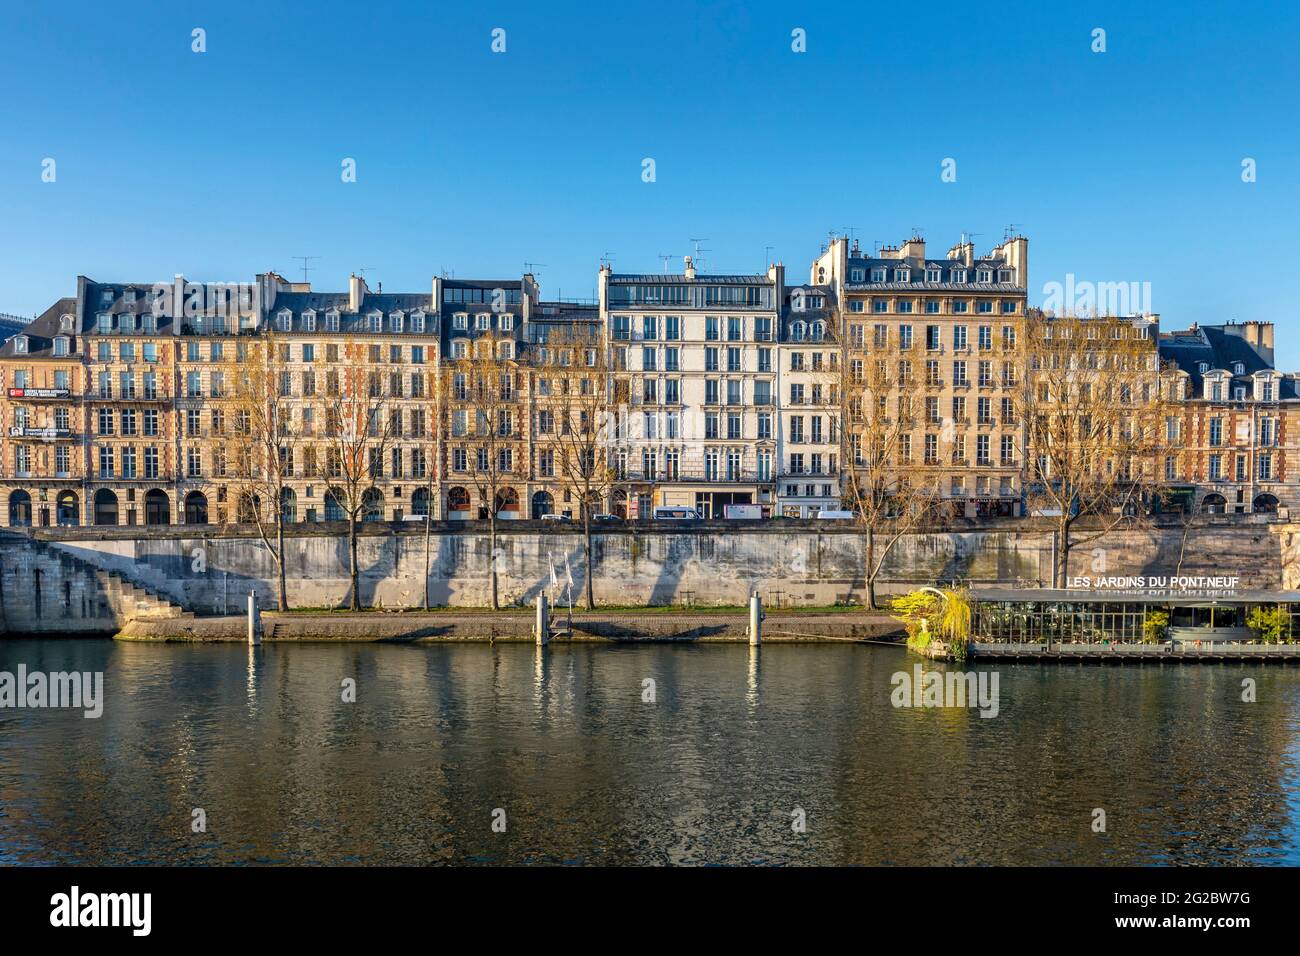 Paris, France - 13 avril 2021 : façades d'immeubles d'appartements à l'Ile de la Cité avec beau ciel bleu à Paris, France Banque D'Images